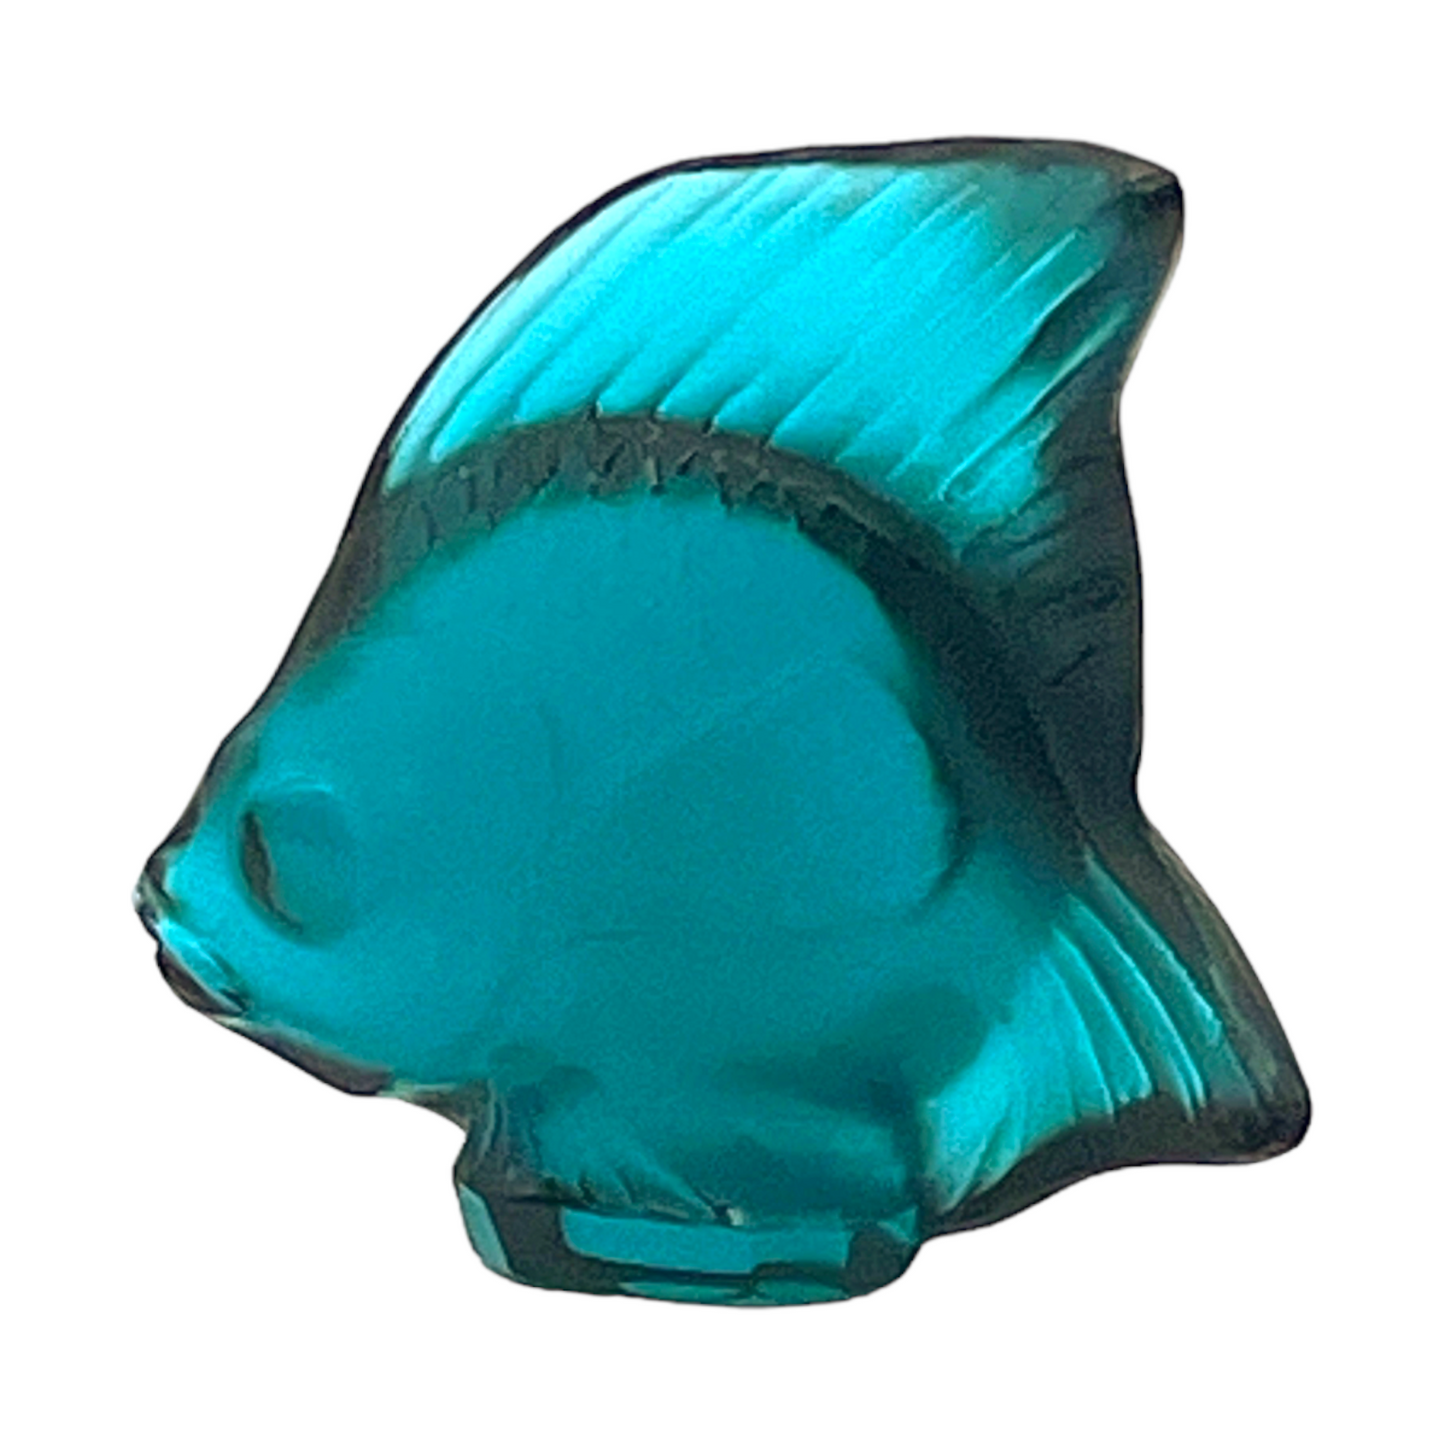 Lalique - Pale Turquoise Fish Sculpture - Signed - 2.25"